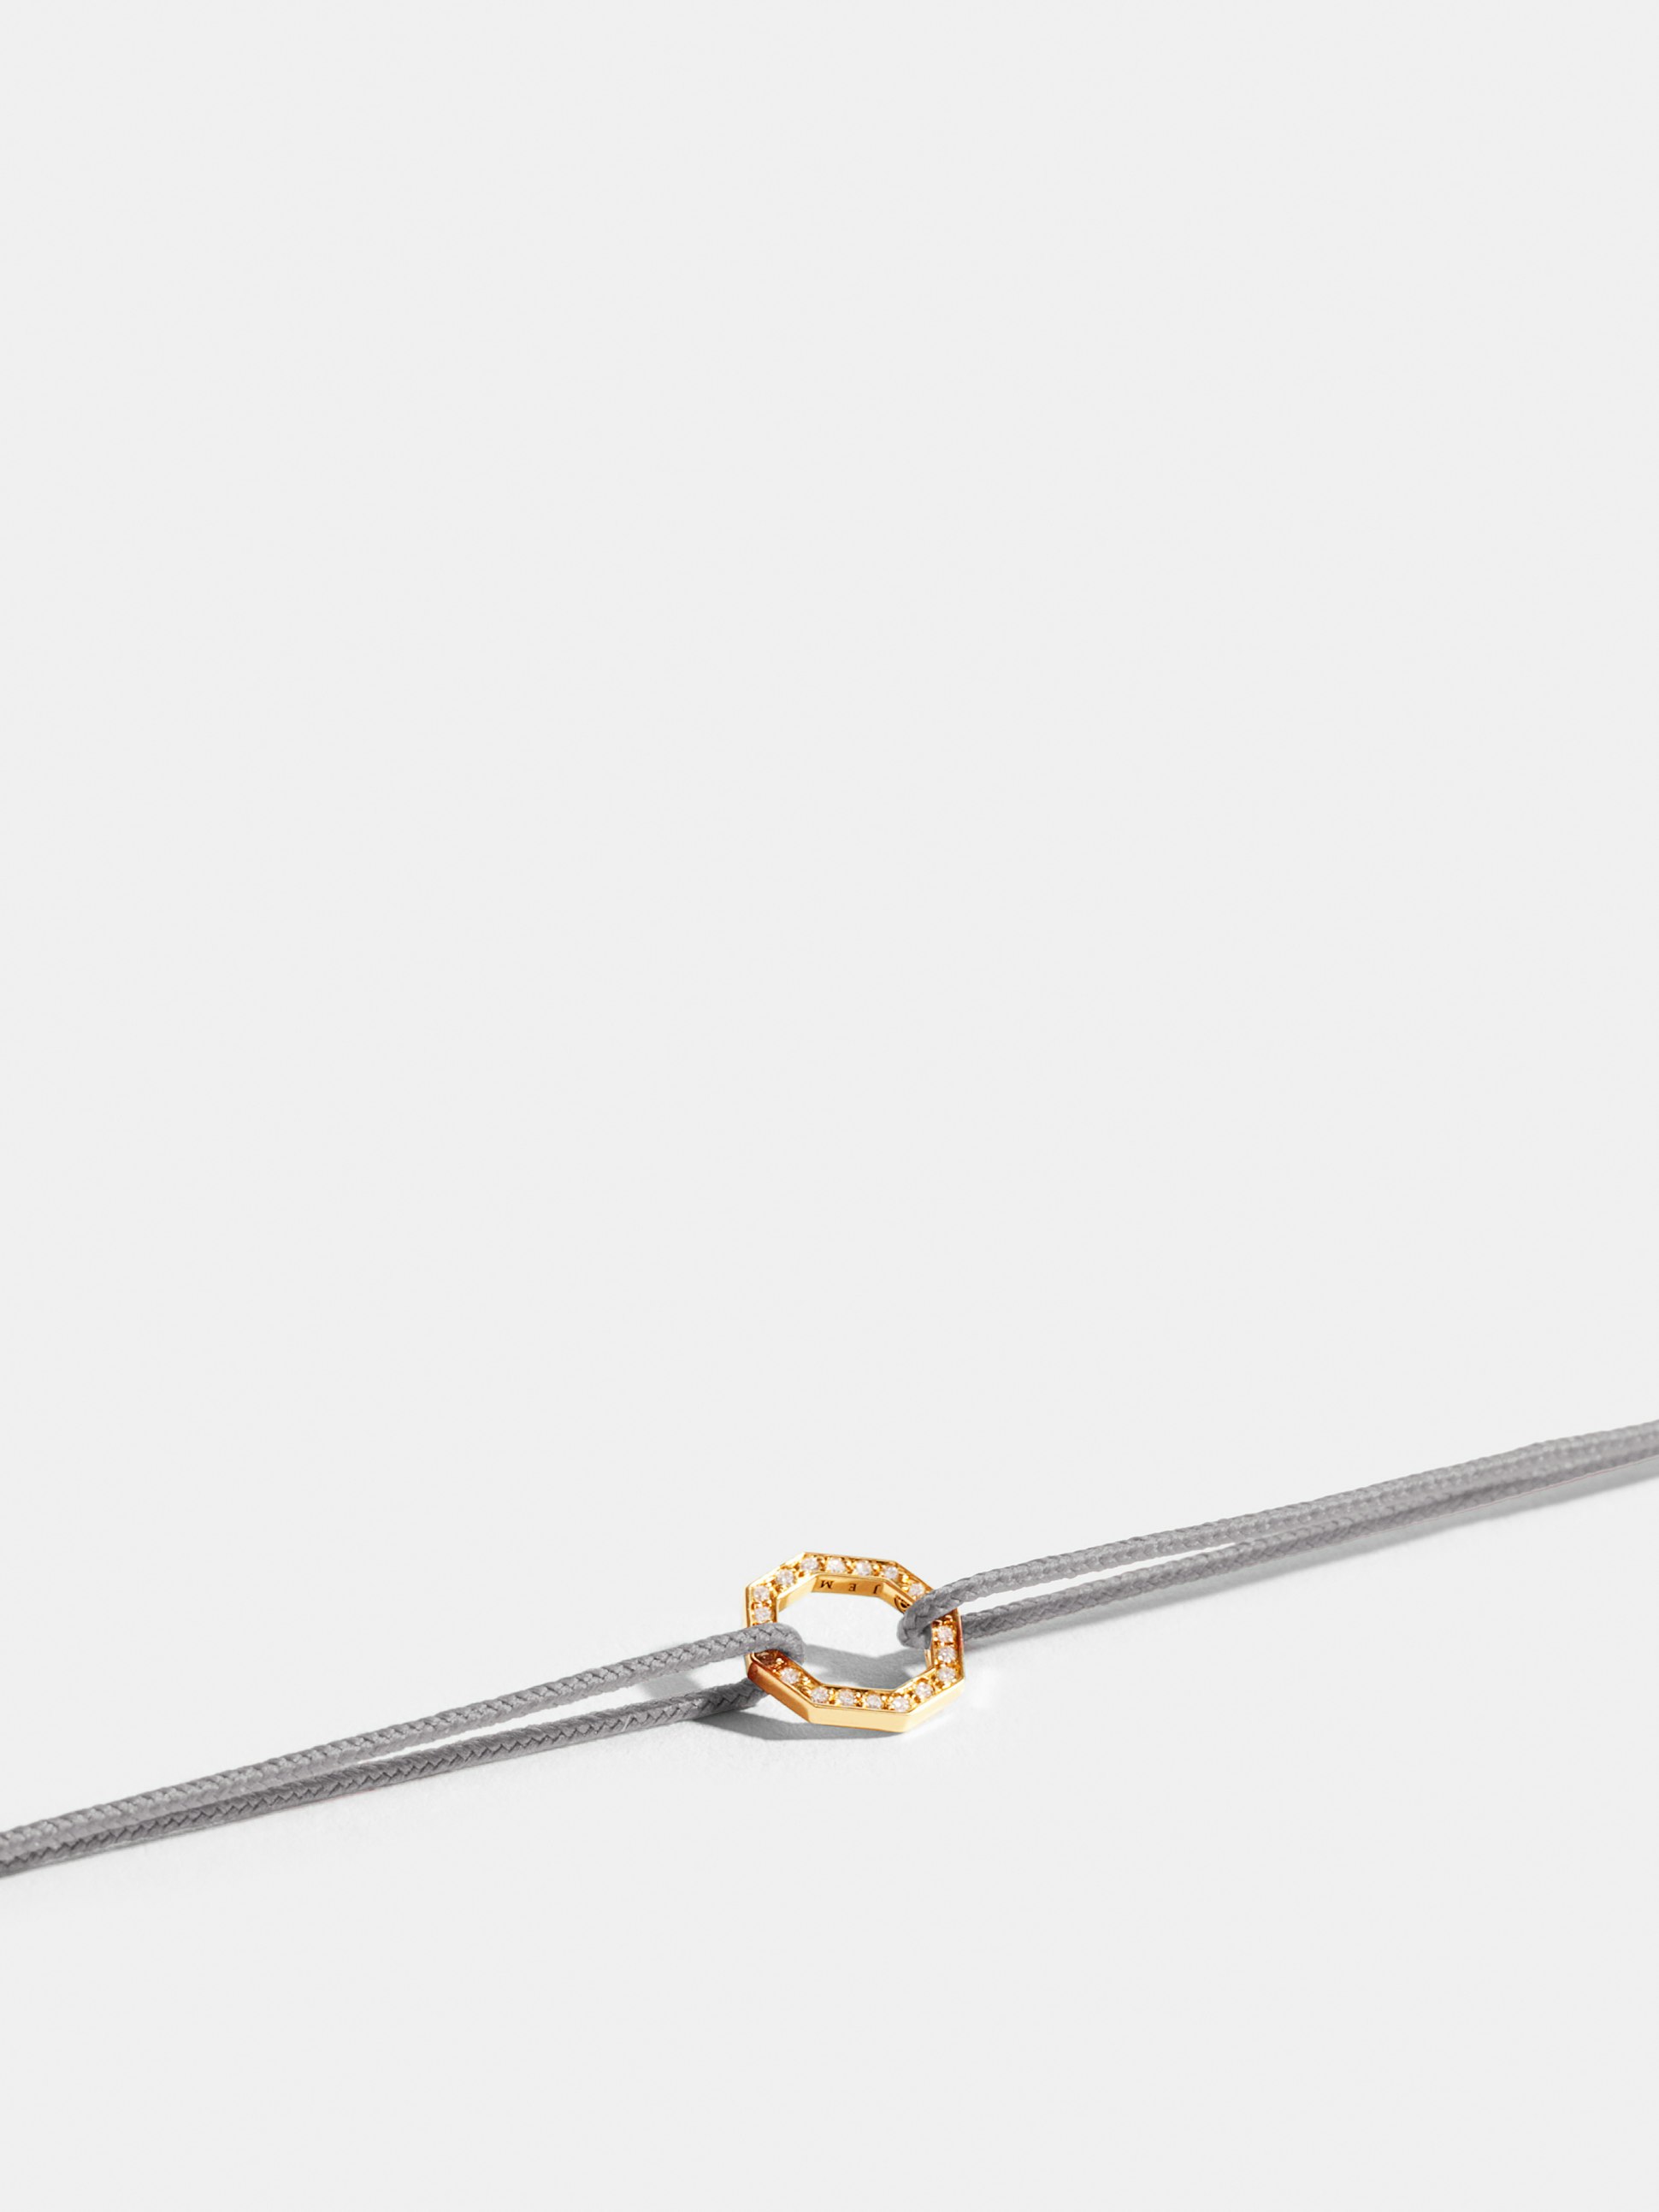 Motif Octogone en Or jaune éthique 18 carats certifié Fairmined et pavé de diamants de synthèse, sur cordon gris perlé.